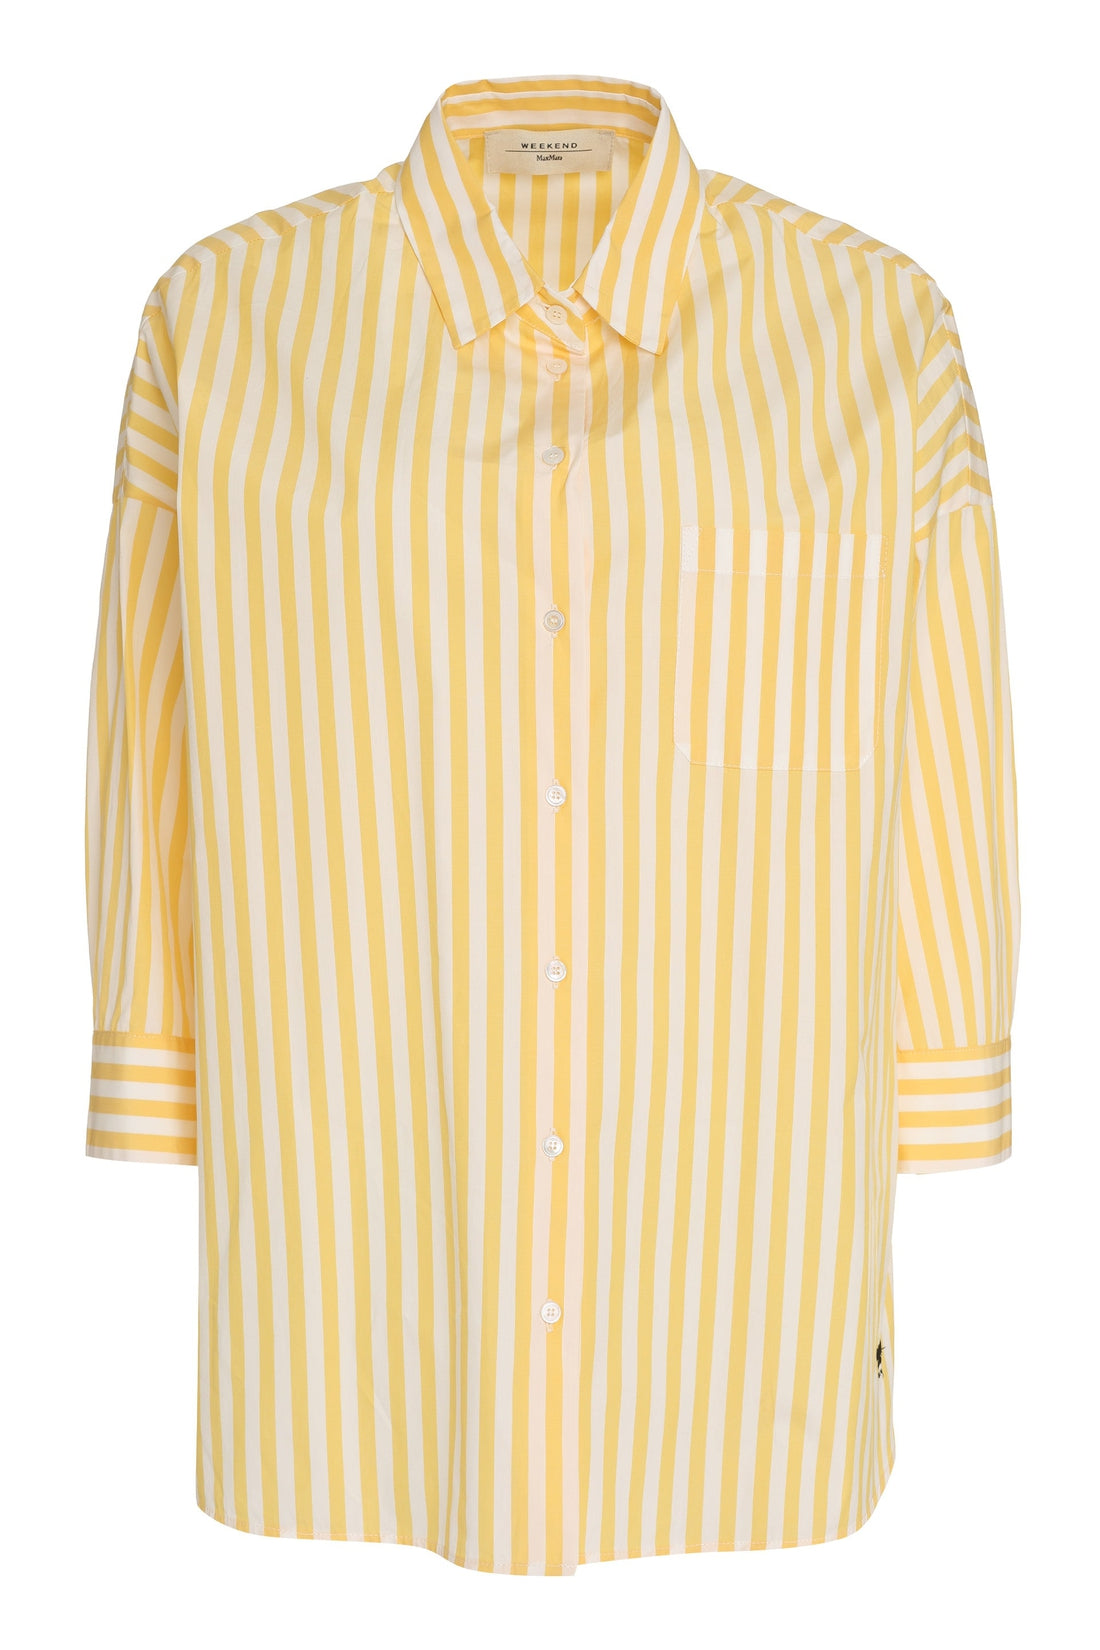 Weekend Max Mara-OUTLET-SALE-Venus shirt in cotton poplin-ARCHIVIST